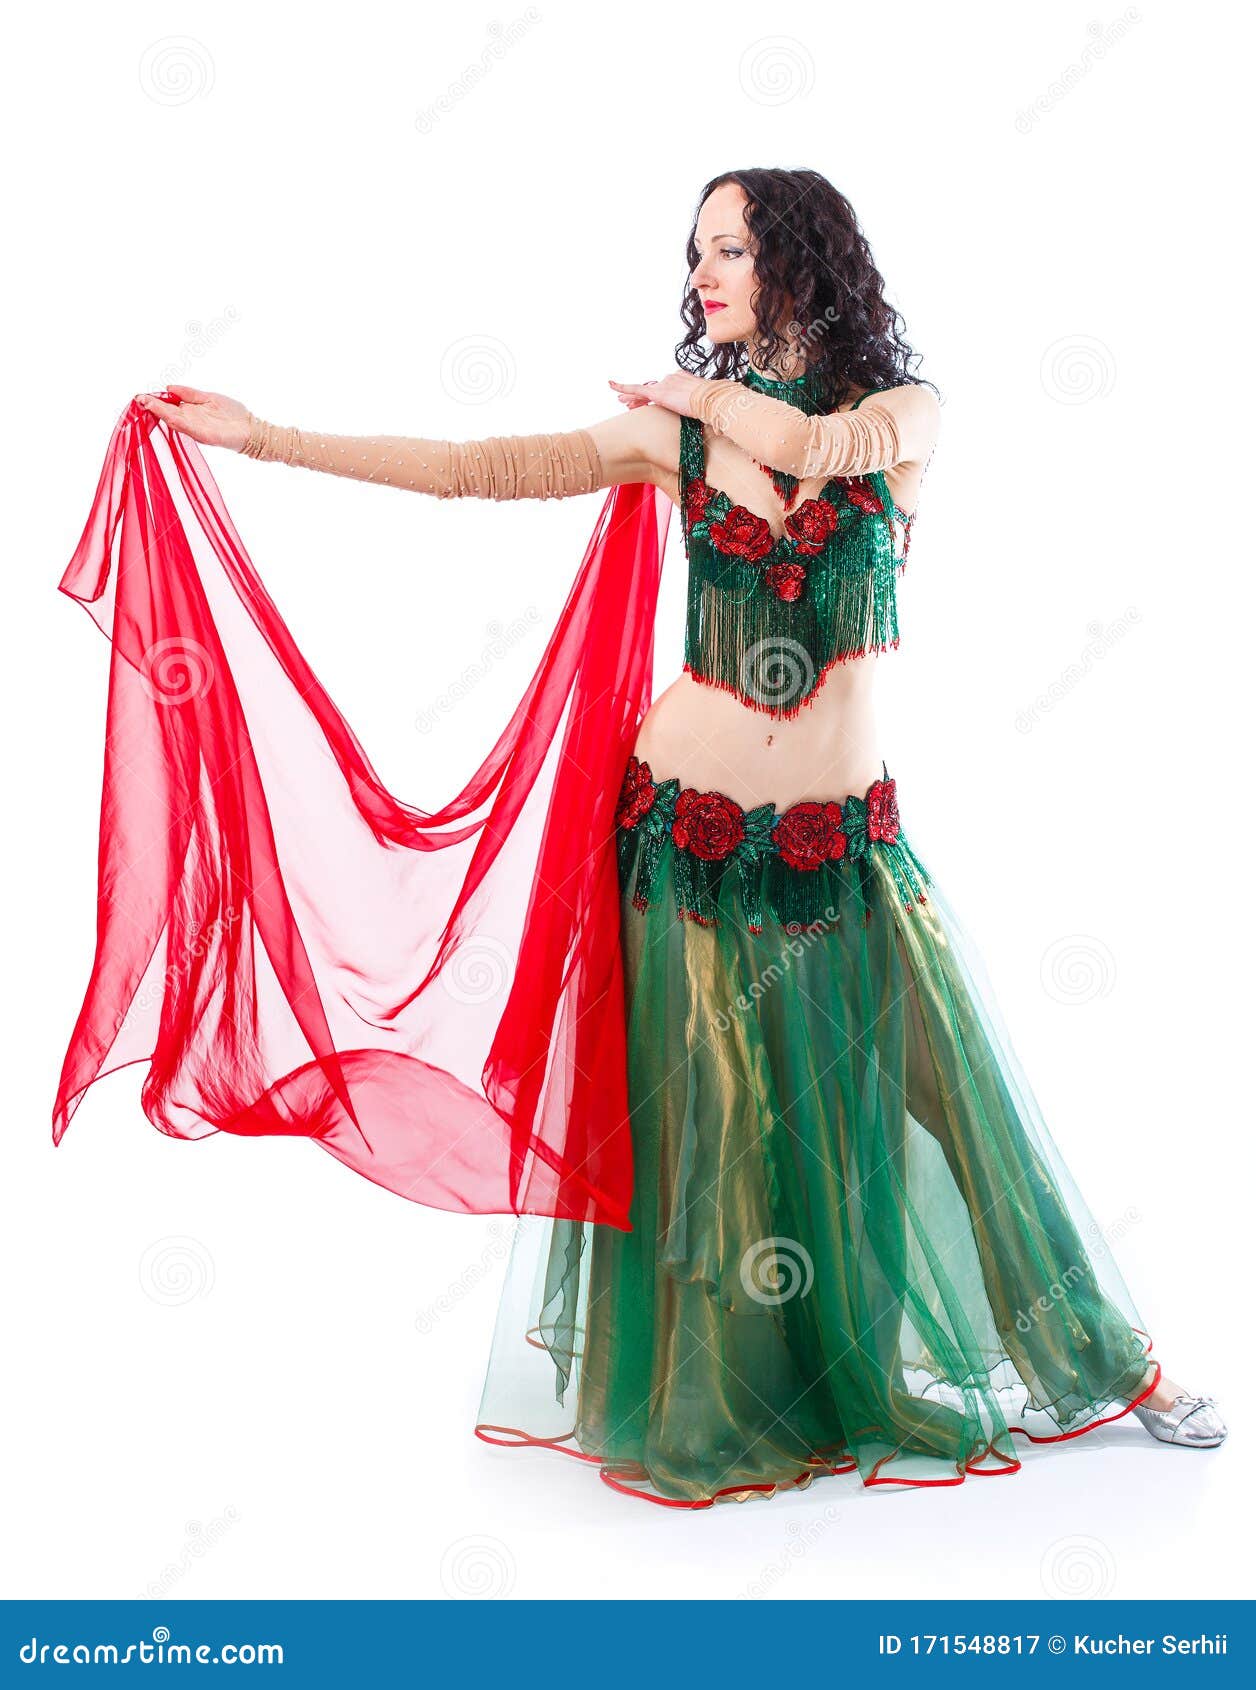 https://thumbs.dreamstime.com/z/la-fille-est-en-costume-de-danseuse-orientale-avec-un-mouchoir-robe-verte-et-une-%C3%A9charpe-rouge-dansant-isol%C3%A9-sur-fond-blanc-171548817.jpg